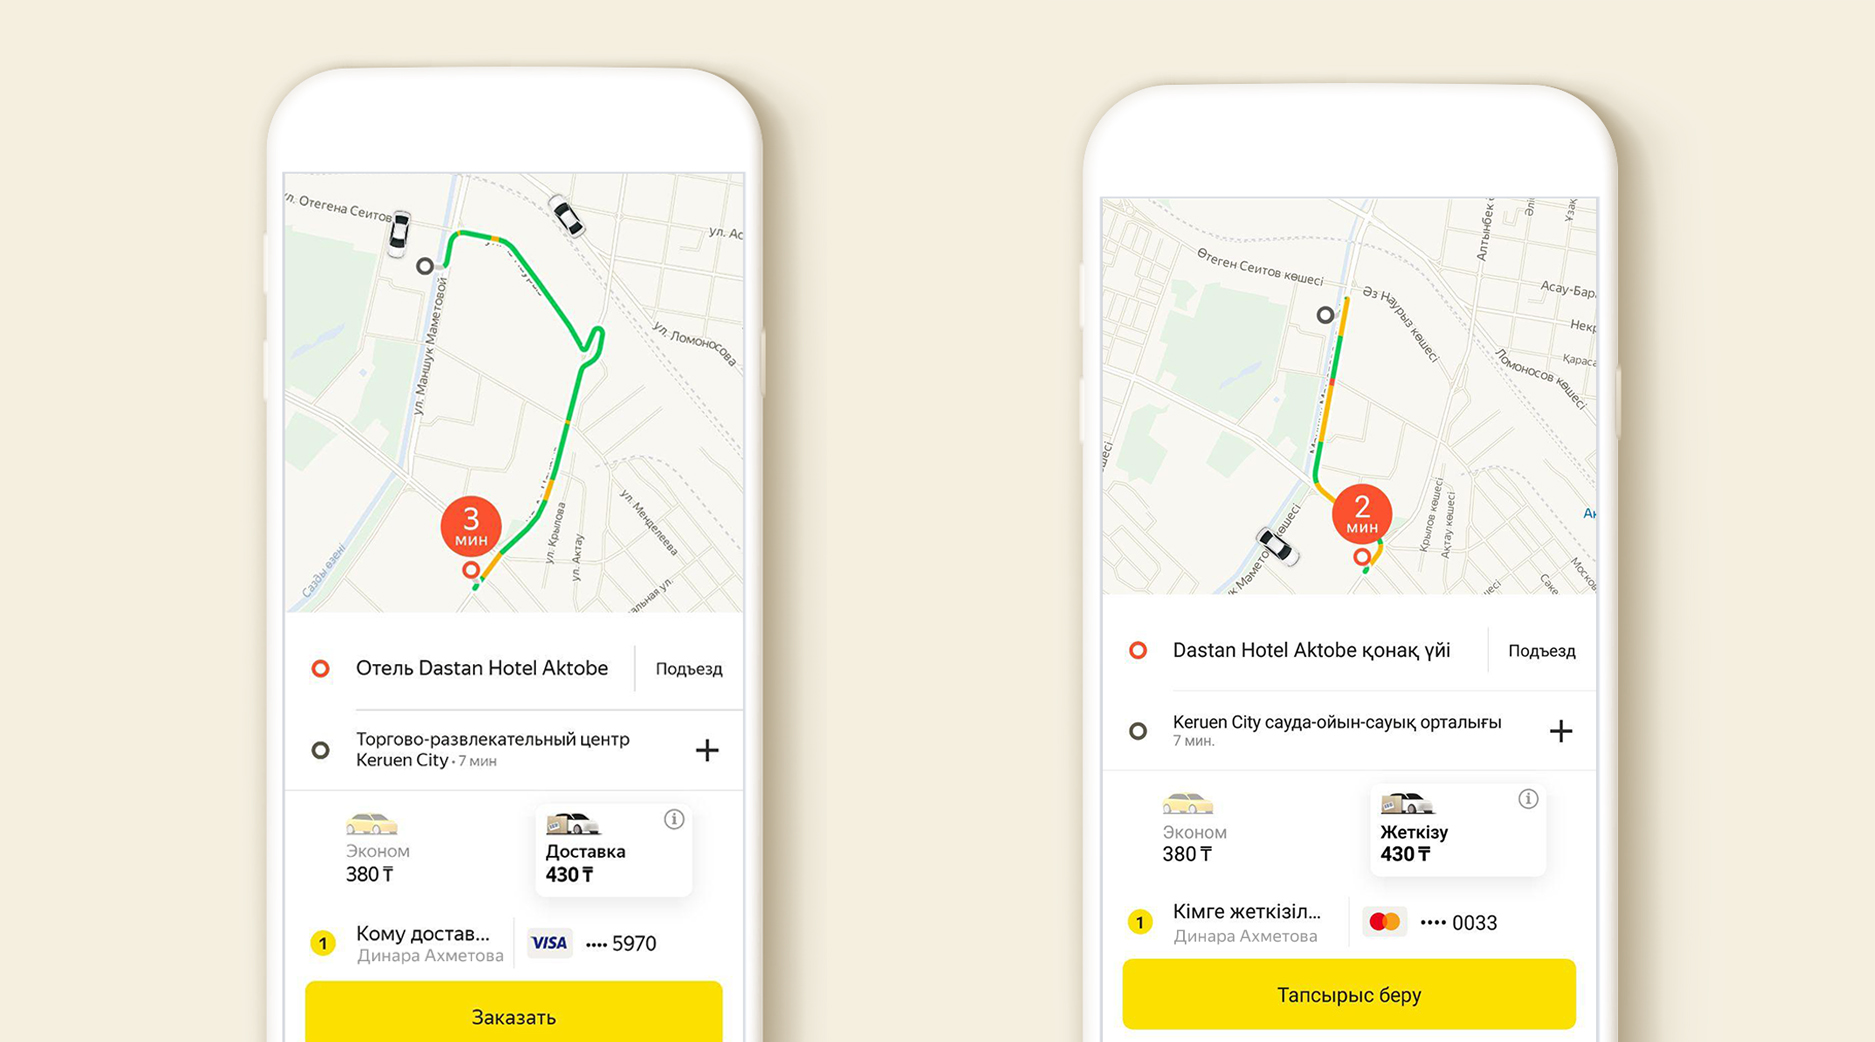 Яндекс такси в чебоксарах: работа, номера телефонов, тарификация и расчет стоимости поездки